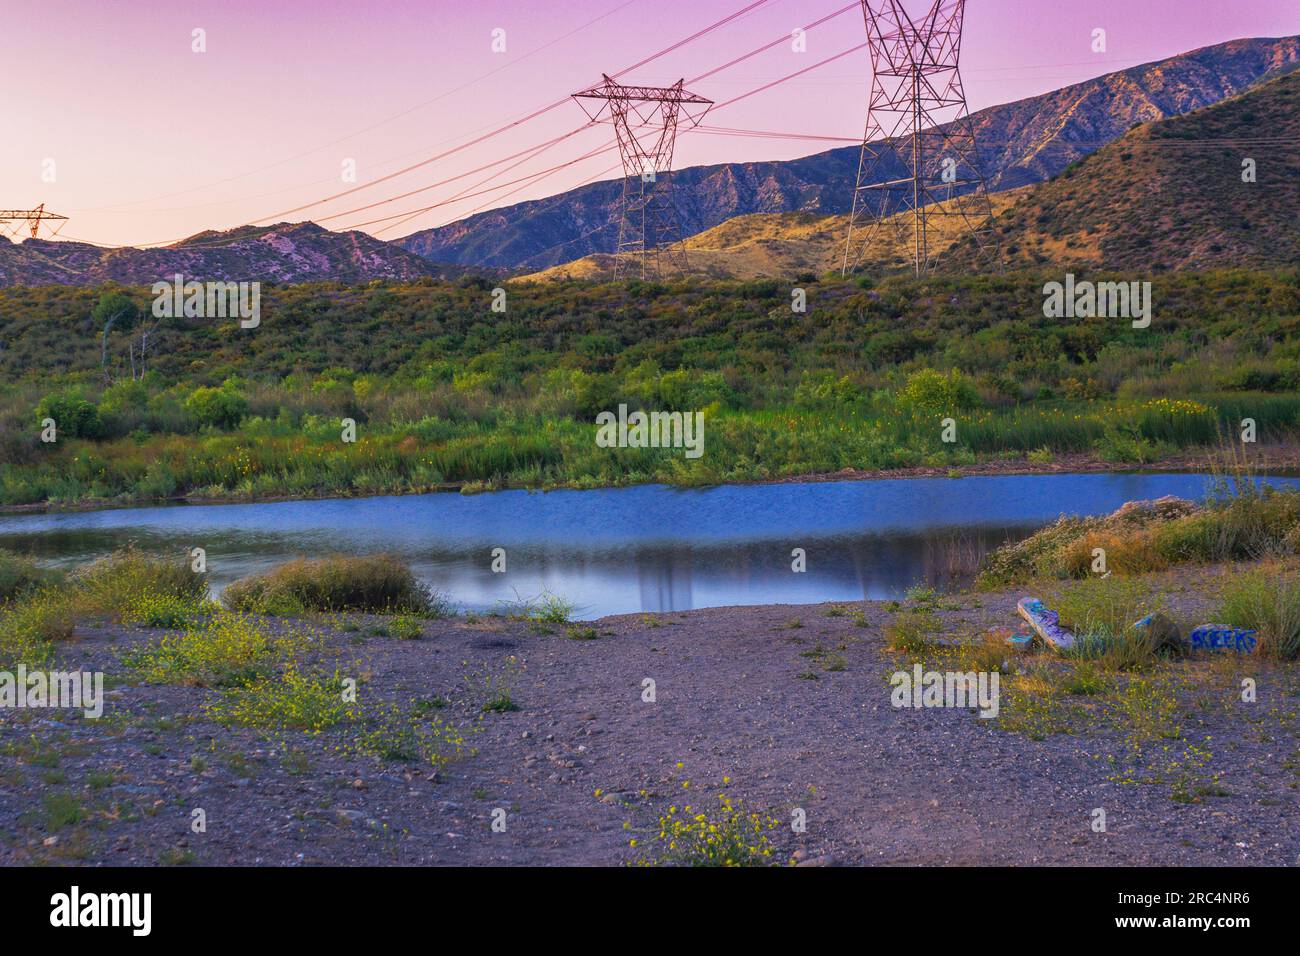 Immergiti nella tranquillità del lago perduto durante l'ora d'oro; le montagne di San Bernardino e la faglia di San Andreas creano un riflesso mozzafiato Foto Stock